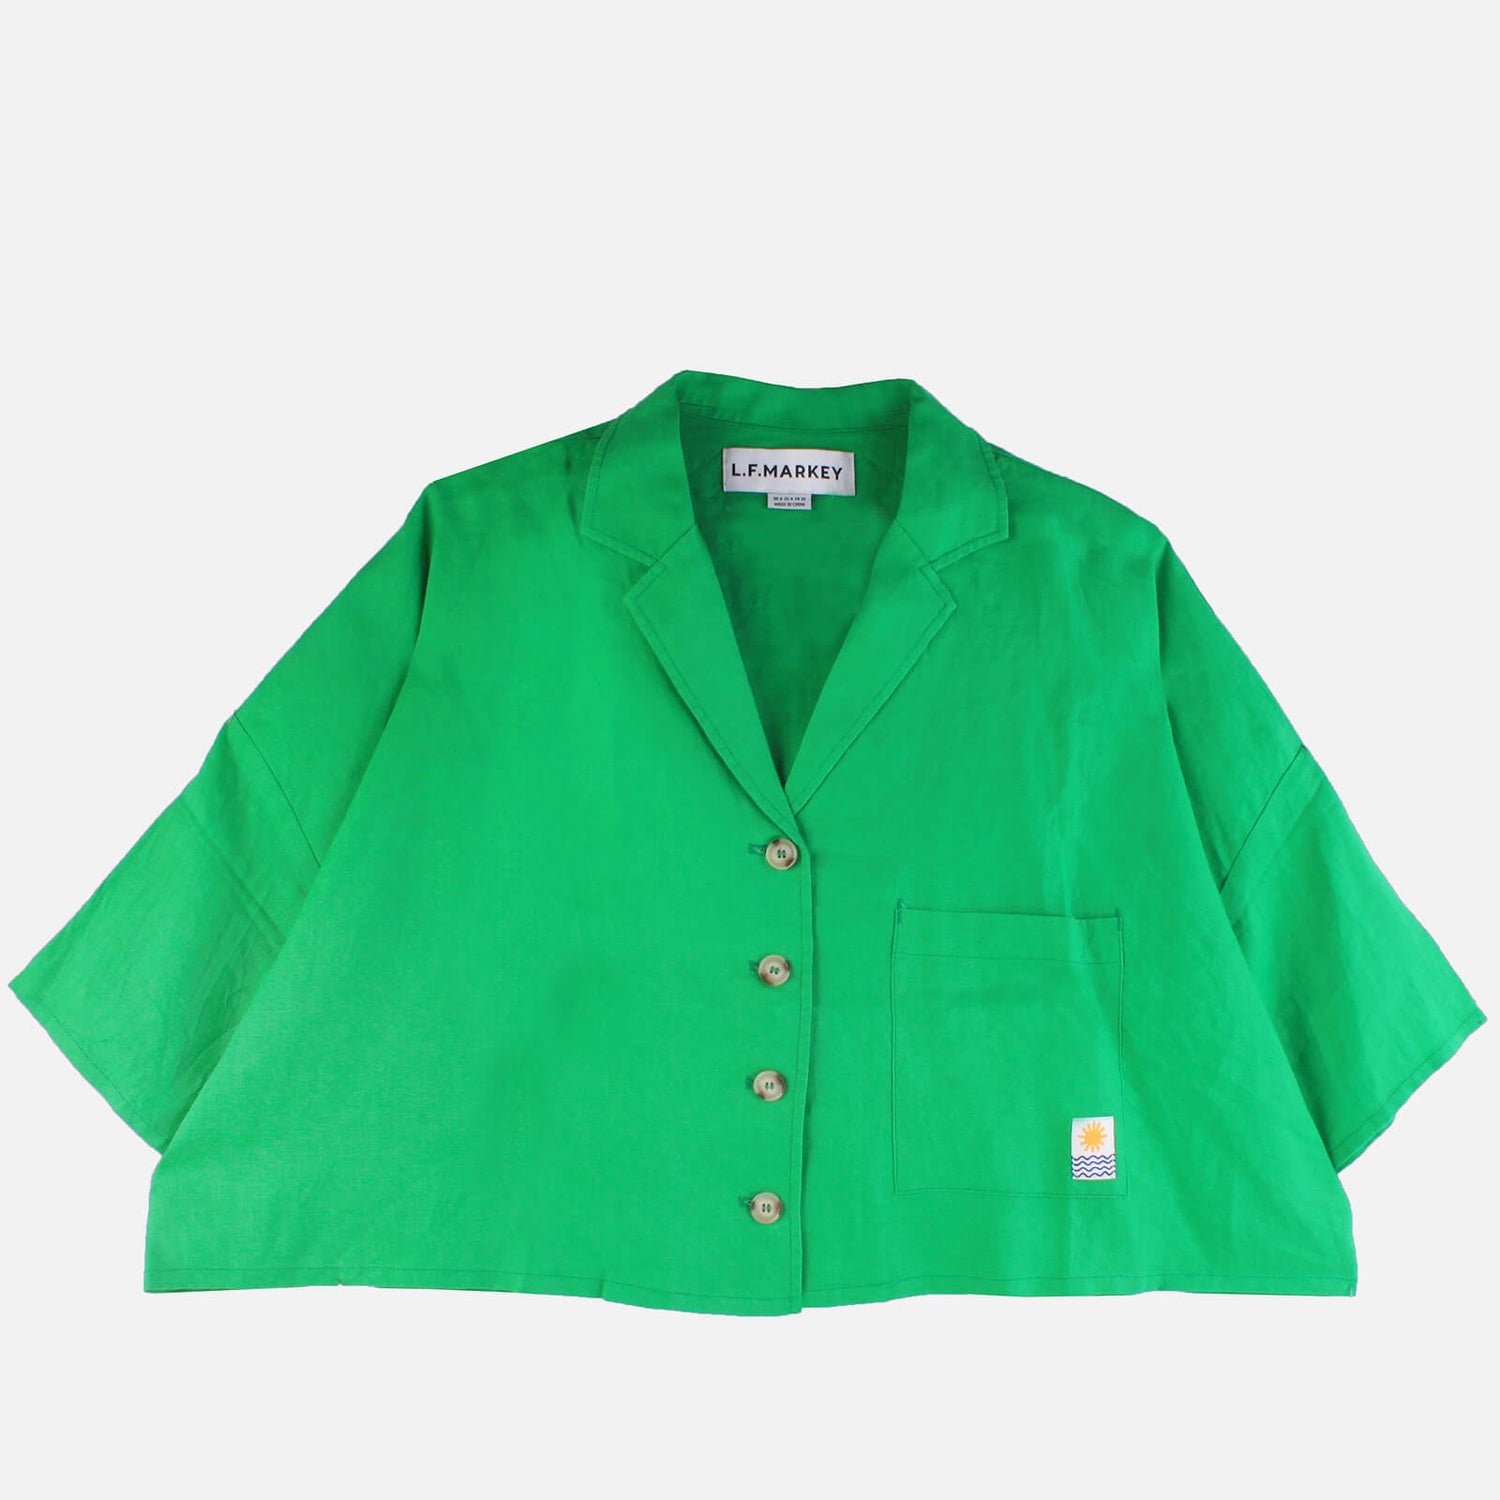 L.F Markey Women's Maxim Shirt - Green - S/M